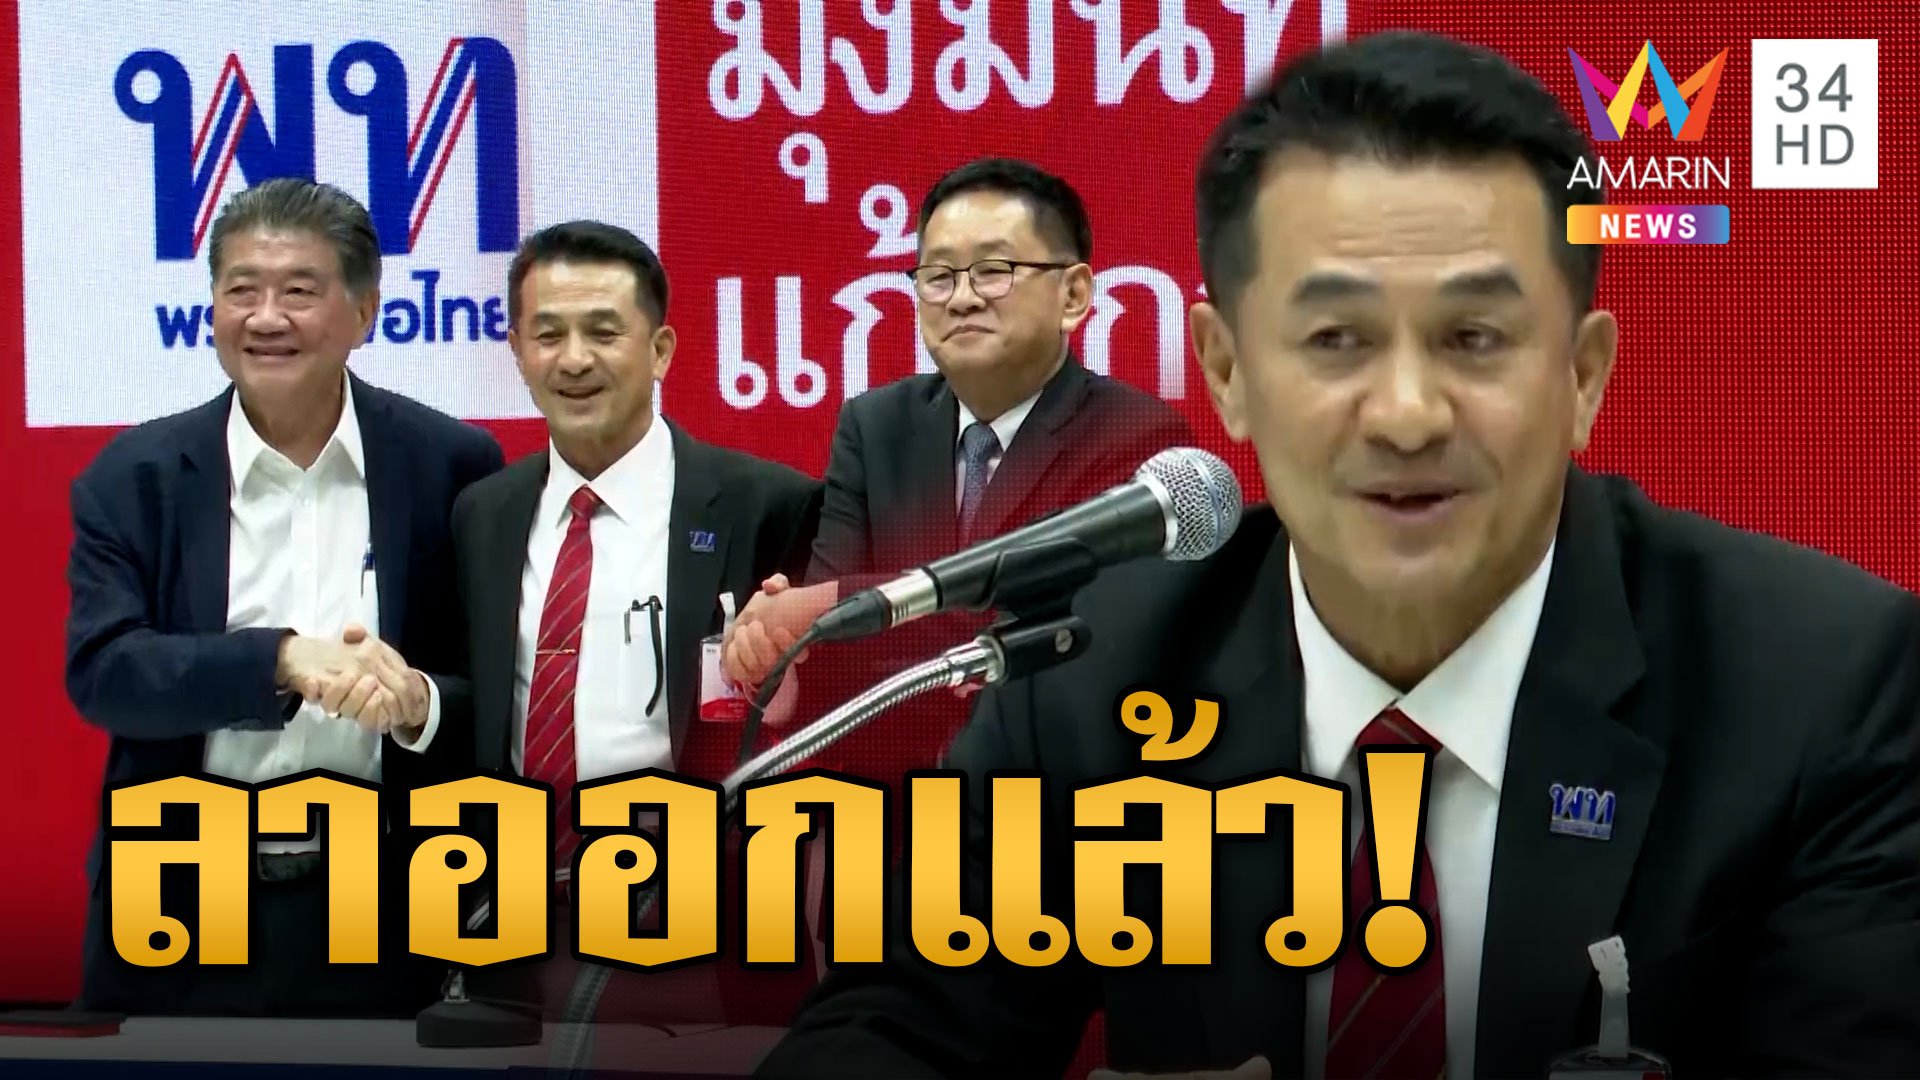 "ชลน่าน" ประกาศลาออกหัวหน้าเพื่อไทย ลั่นรักษาสัจจะ สิ้นสุดแฮชแท็กชลน่านลาออกกี่โมง | ข่าวอรุณอมรินทร์ | 31 ส.ค. 66 | AMARIN TVHD34